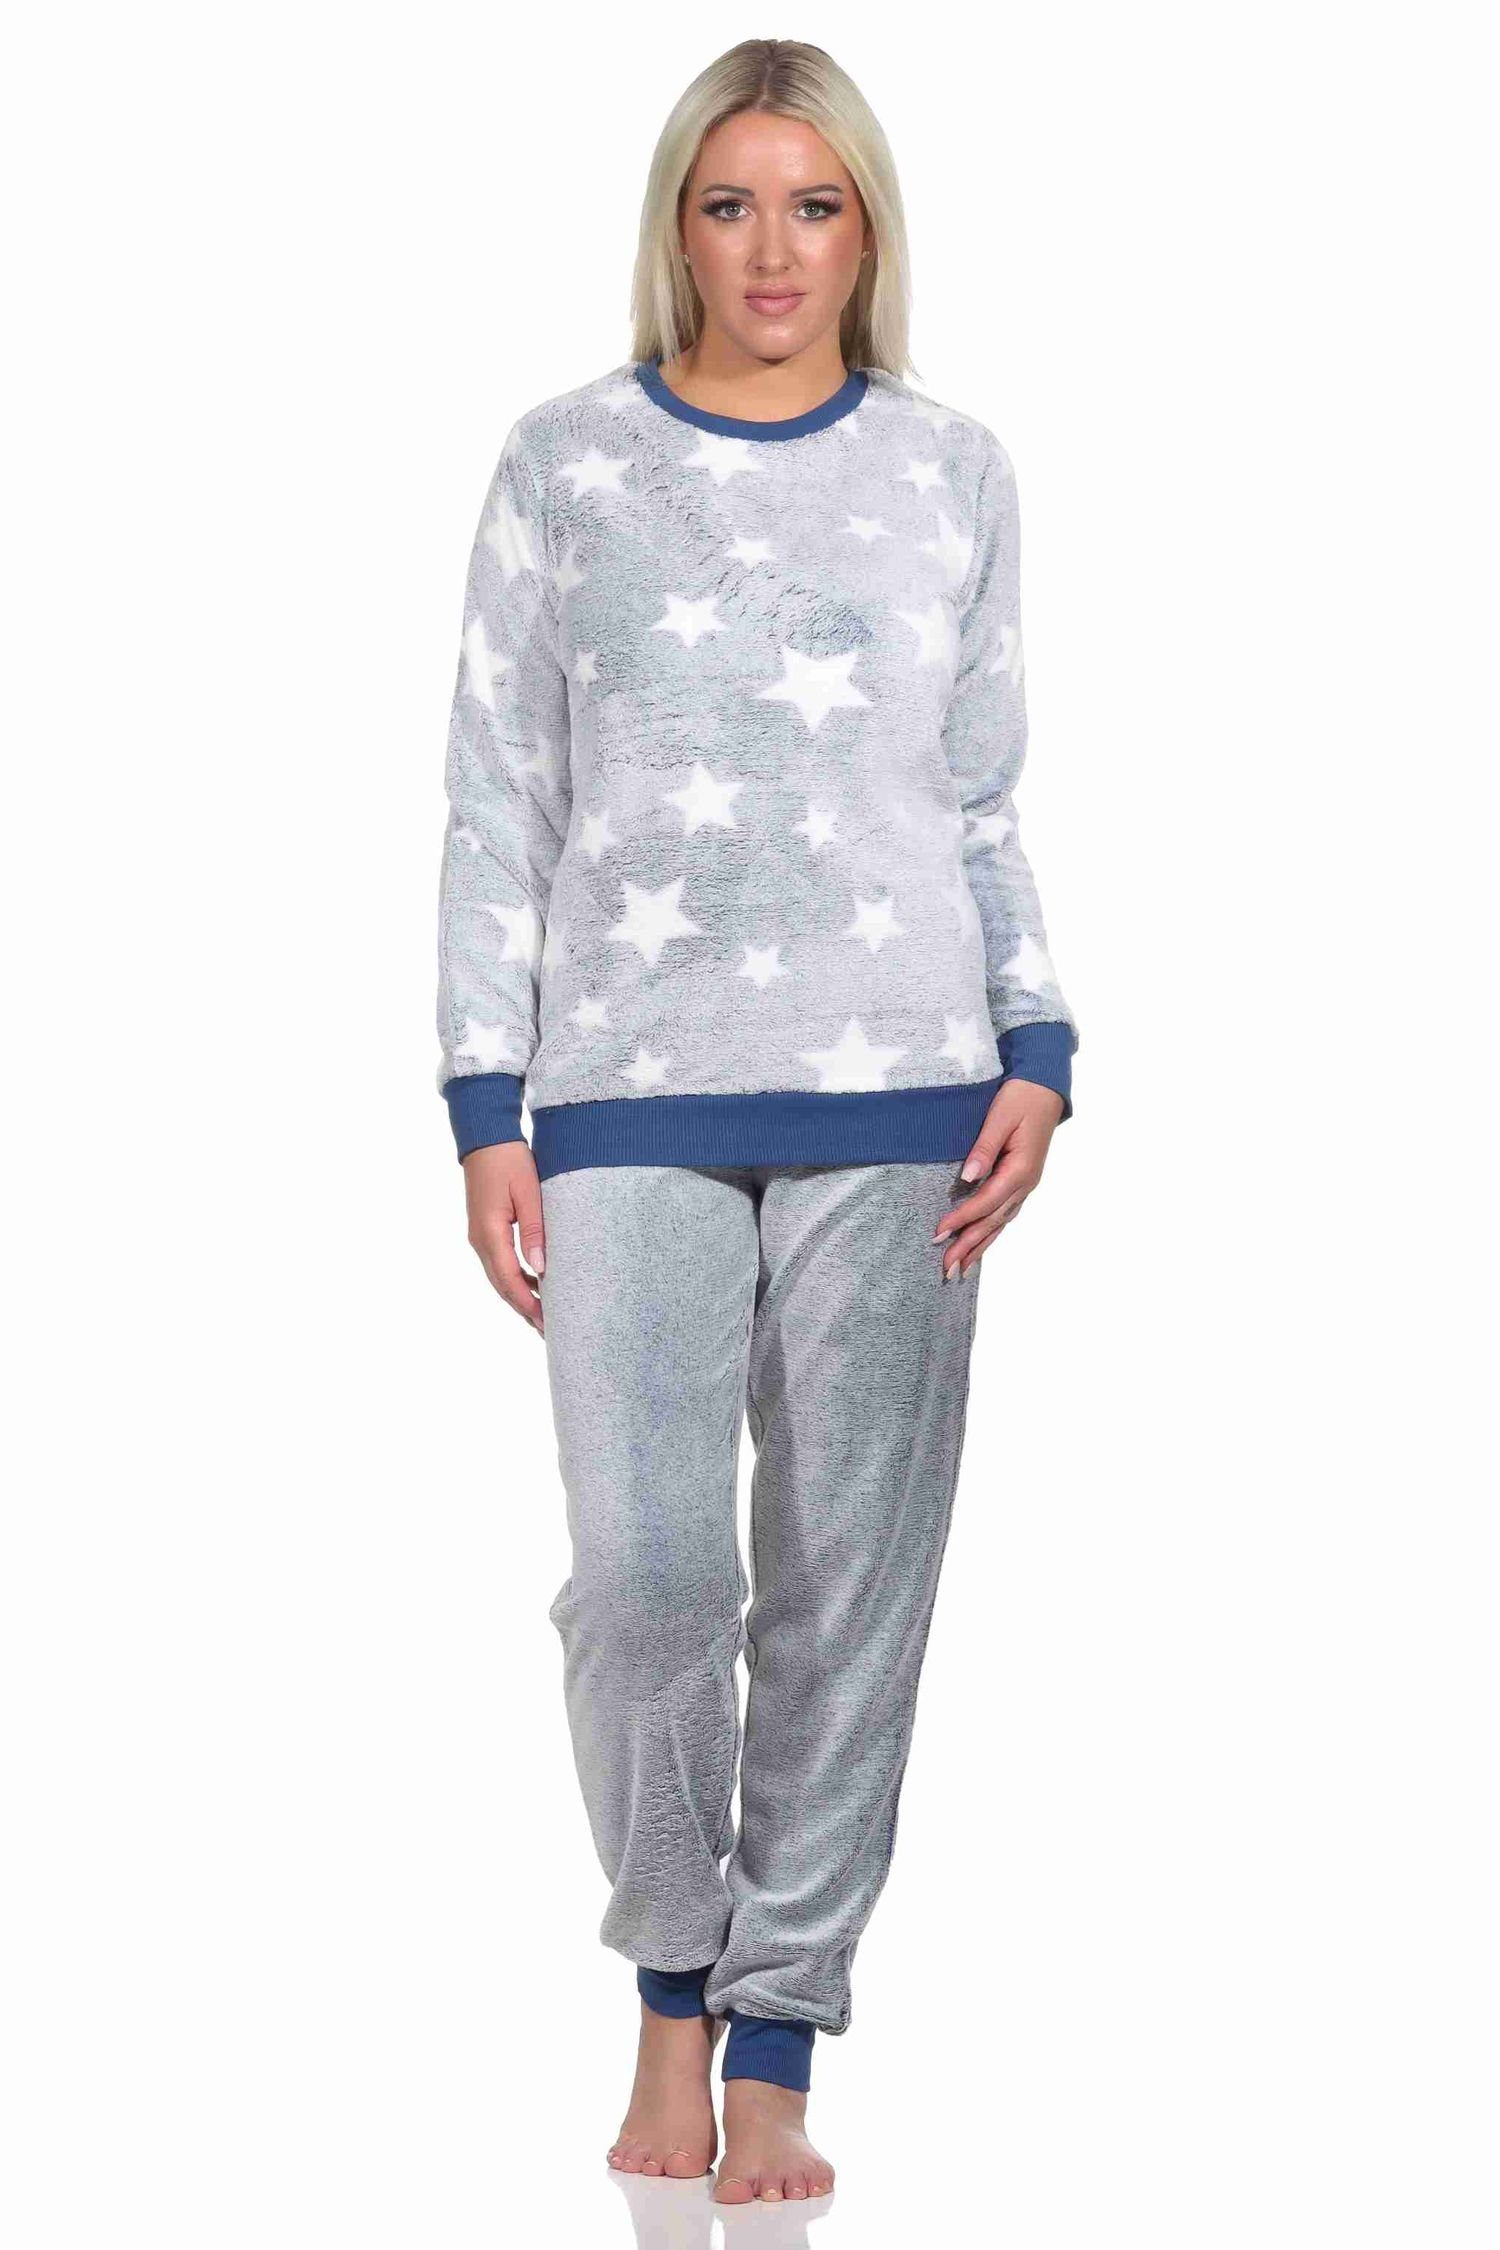 Bündchen mit Damen Pyjama Schlafanzug Normann langarm in Sterneoptik blau